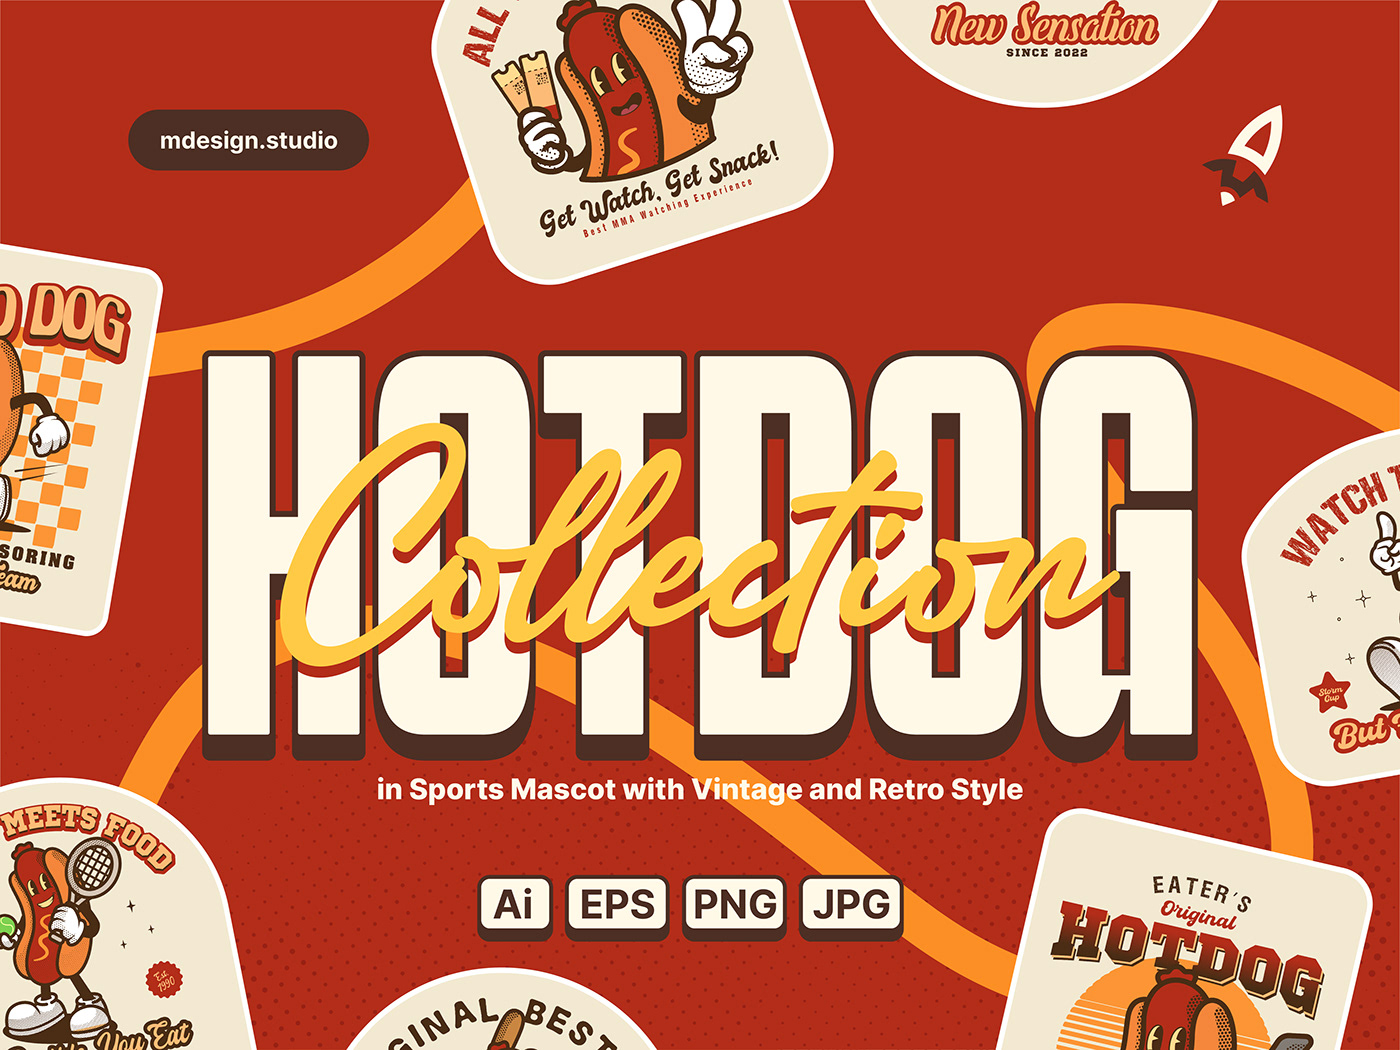 hotdog Fast food restaurant menu Food  visual identity vintage logo Retro 80s vintage